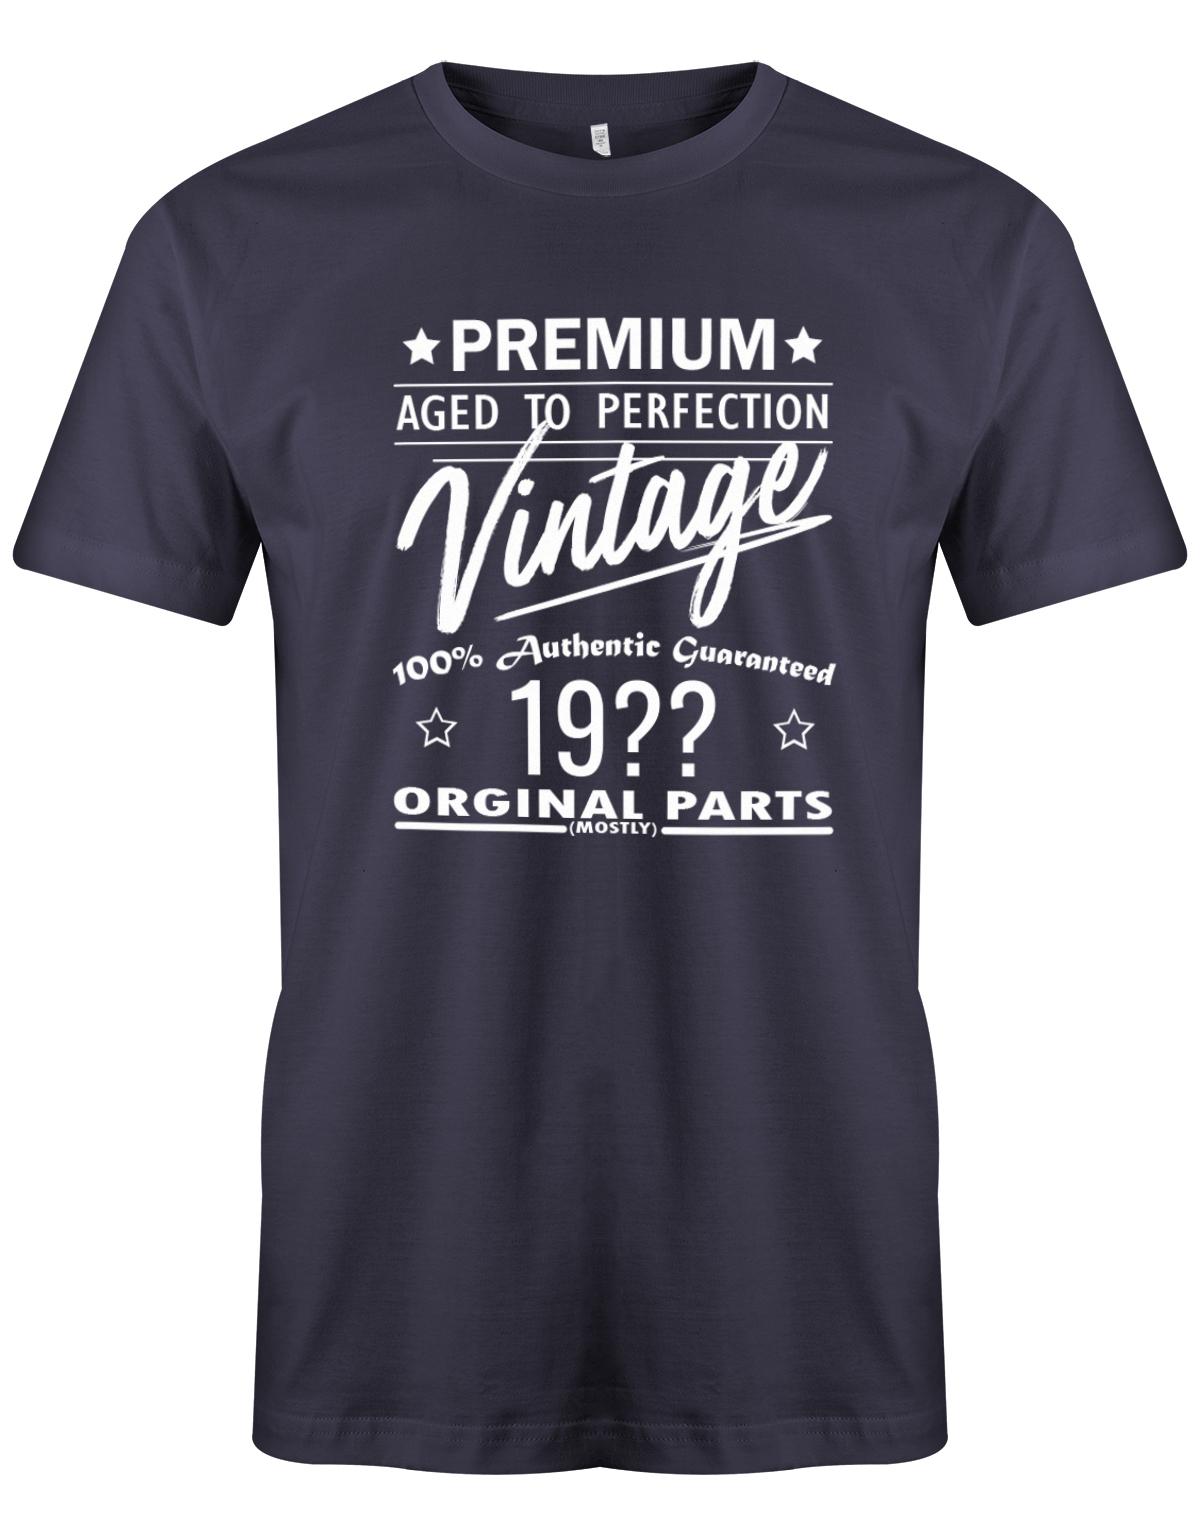 Geburtstag Tshirt für Männer Trage dein Geburtsjahr ein und mache daraus ein Unikat. Premium aged to perfection Vintage 100% Authentic Guaranteed Geburtsjahr Original Parts Mostly Navy